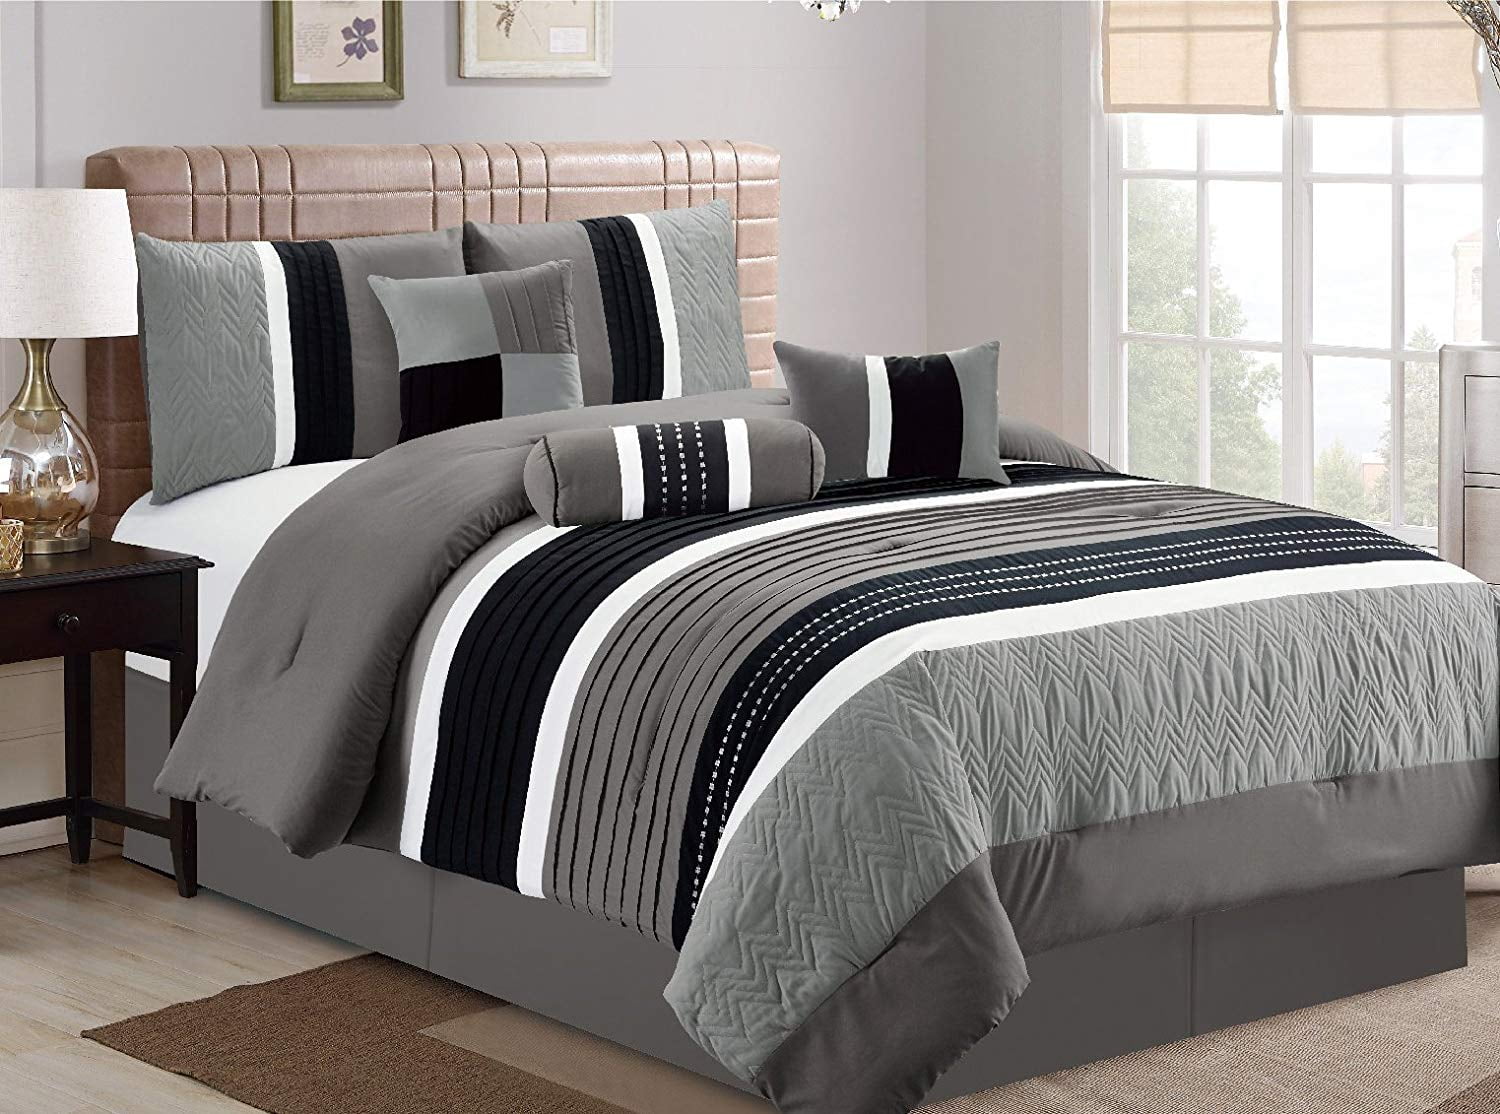 HGMart Bedding Comforter Set Bed In A Bag Collection 7